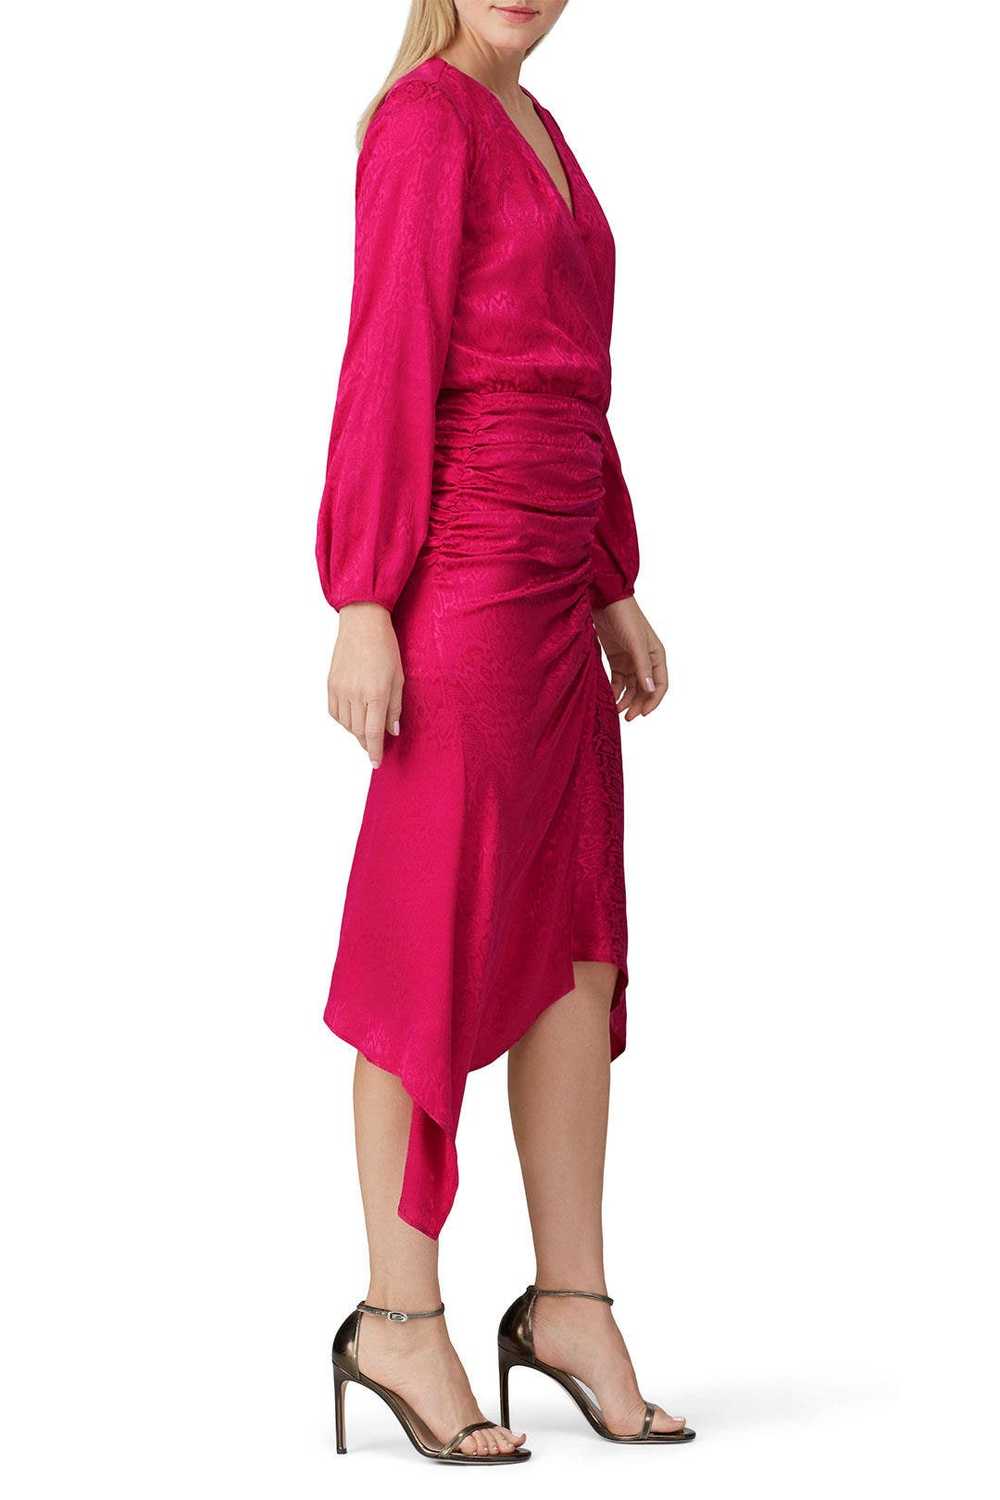 krisa Pink High Low Surplice Dress - image 2